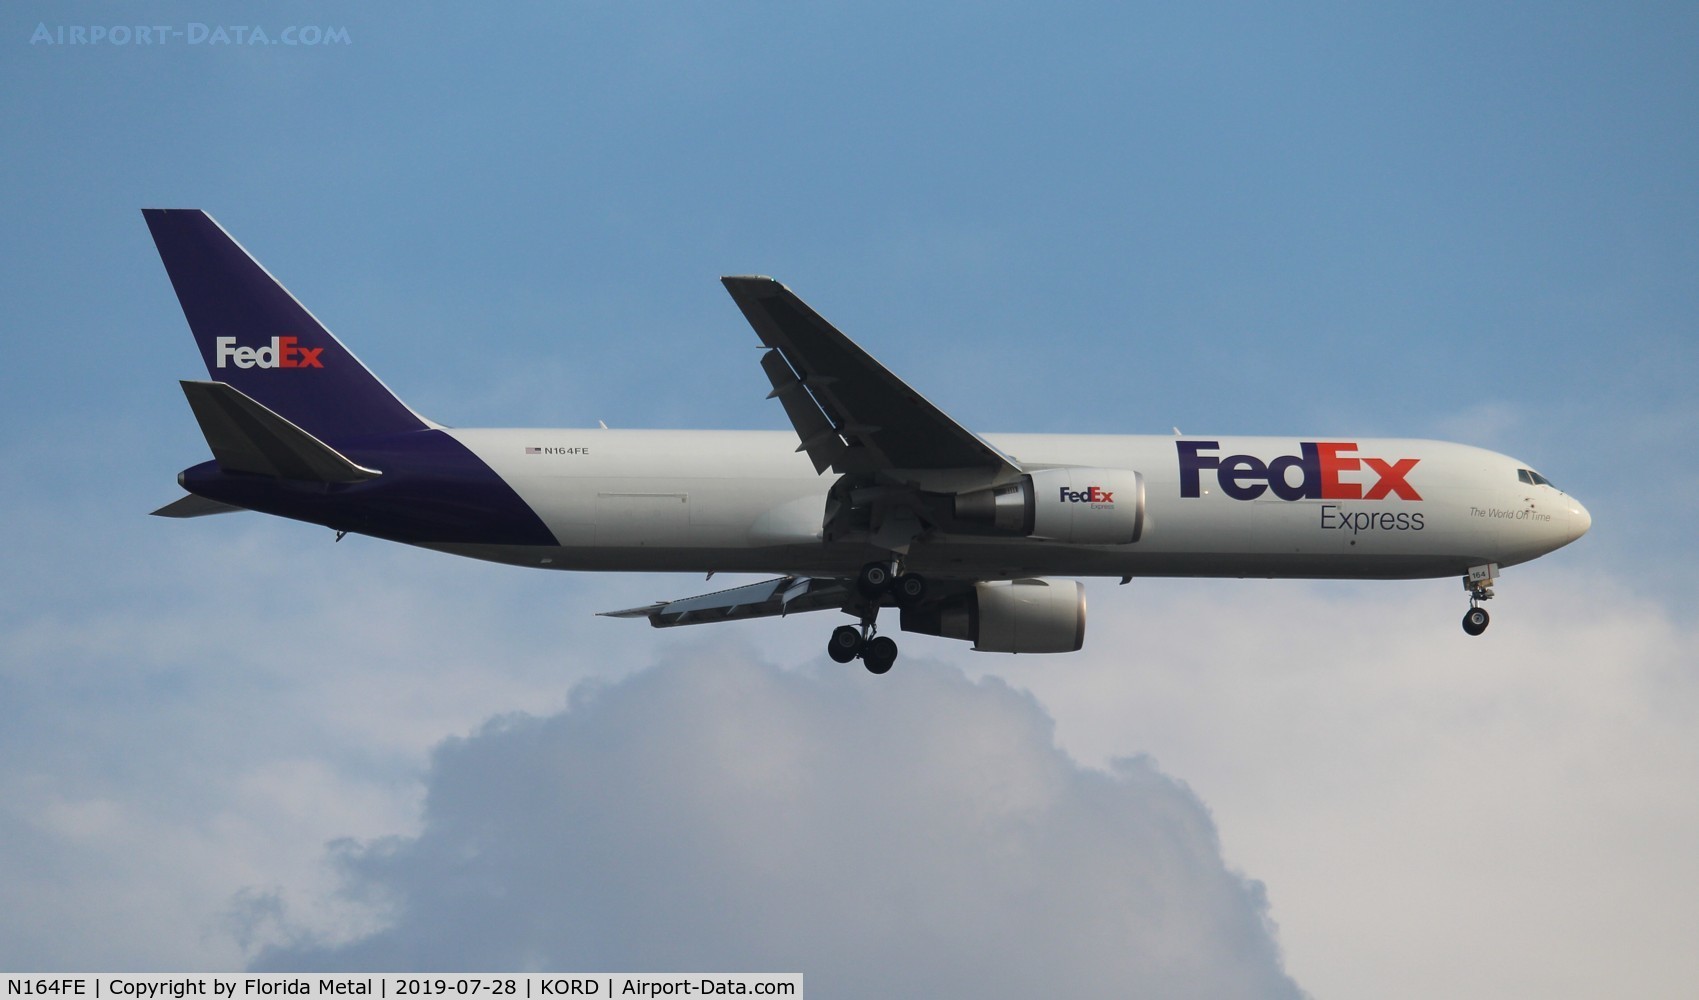 N164FE, 2018 Boeing 767-300F C/N 43554, FedEx 767-300F zx